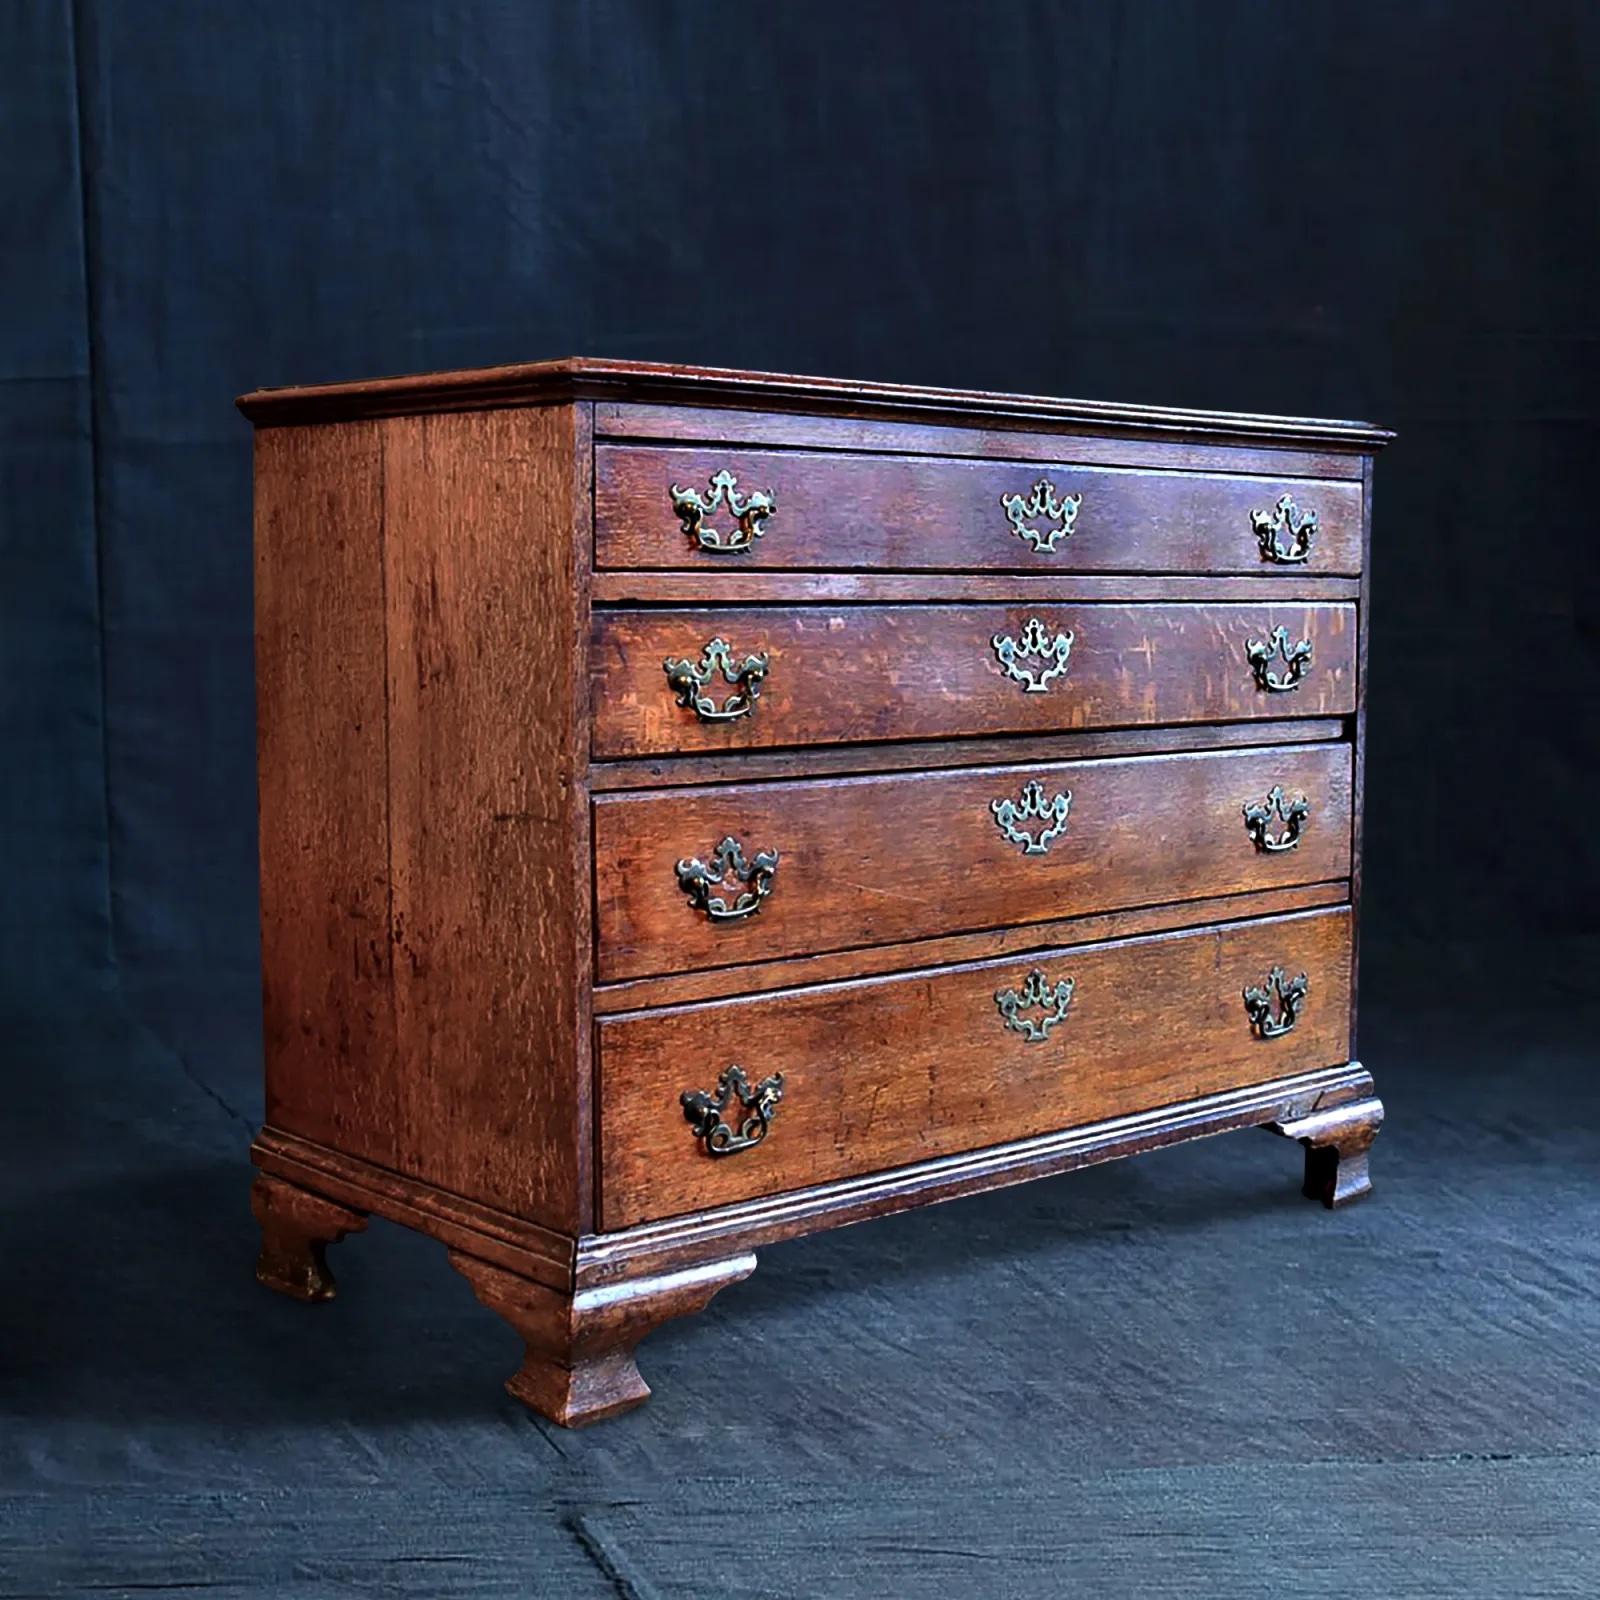 Oak chest of drawers. Excellent colour and condition.
English c.1800
H.82cm x W.104cm x D.52cm